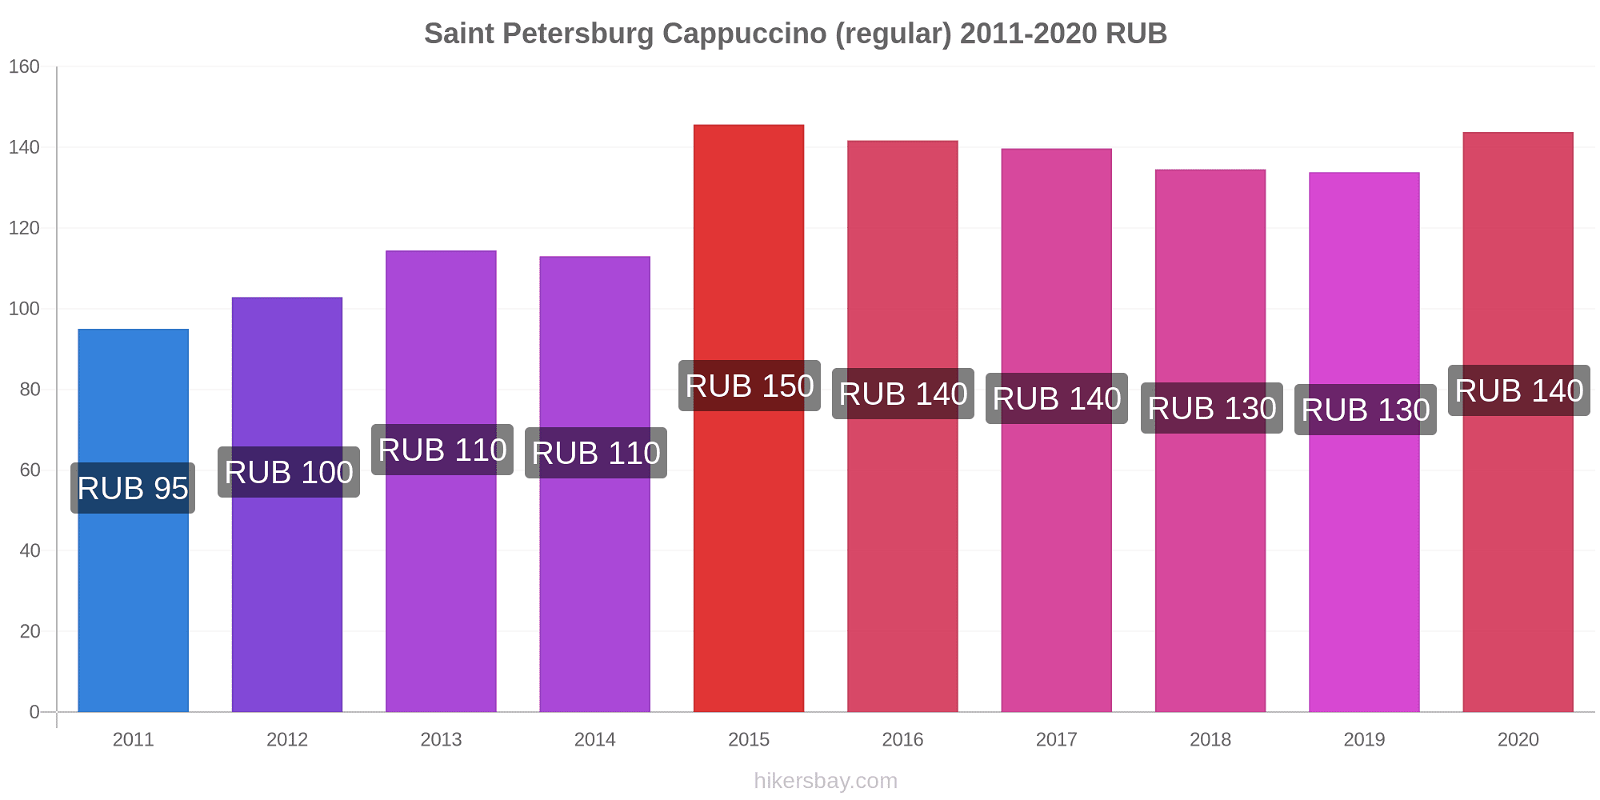 Saint Petersburg price changes Cappuccino (regular) hikersbay.com